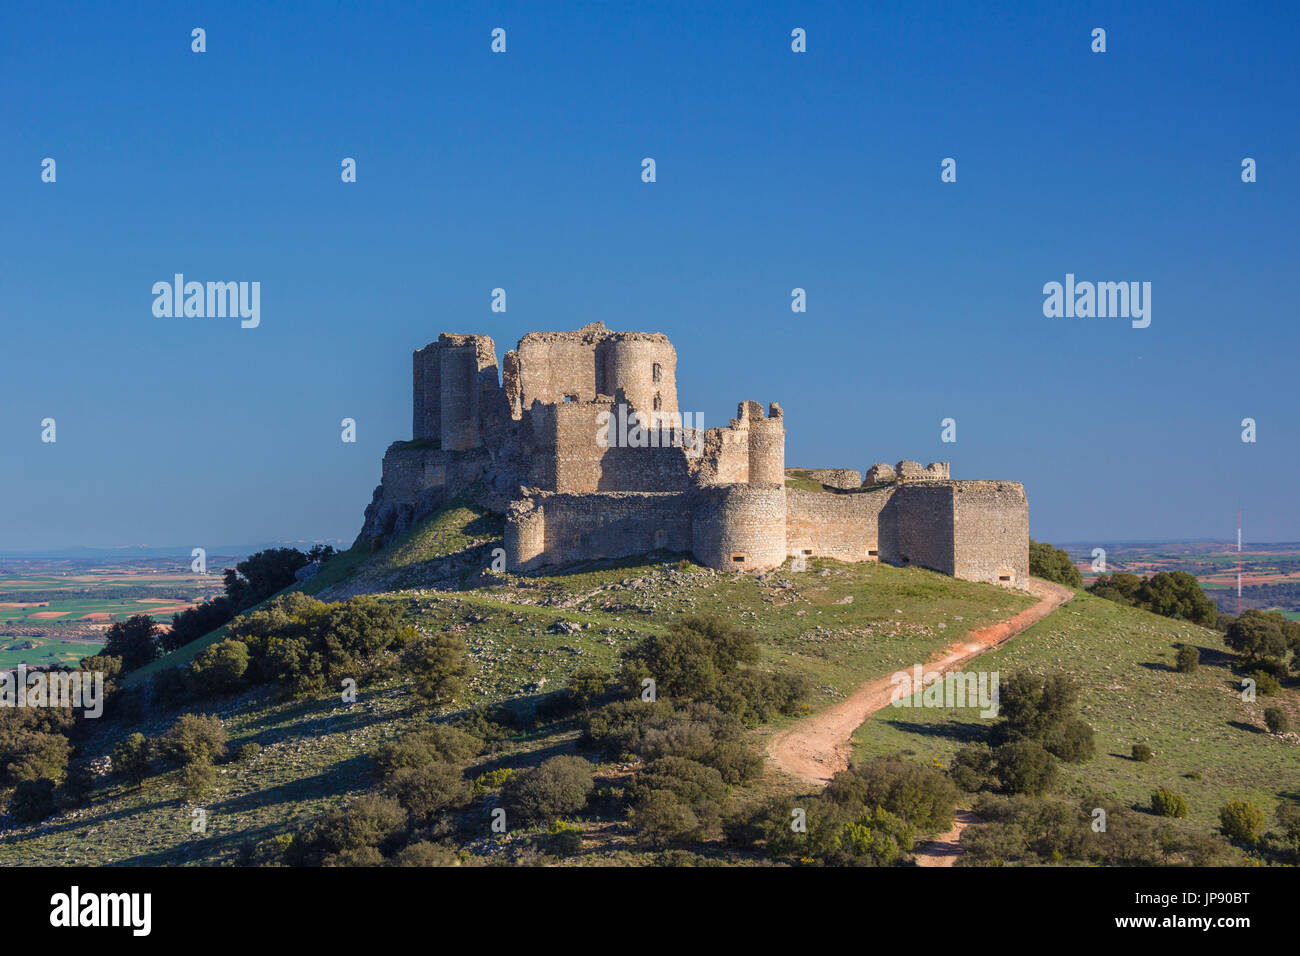 Spain, Cuenca province, Puebla de Almenara Fortress Stock Photo